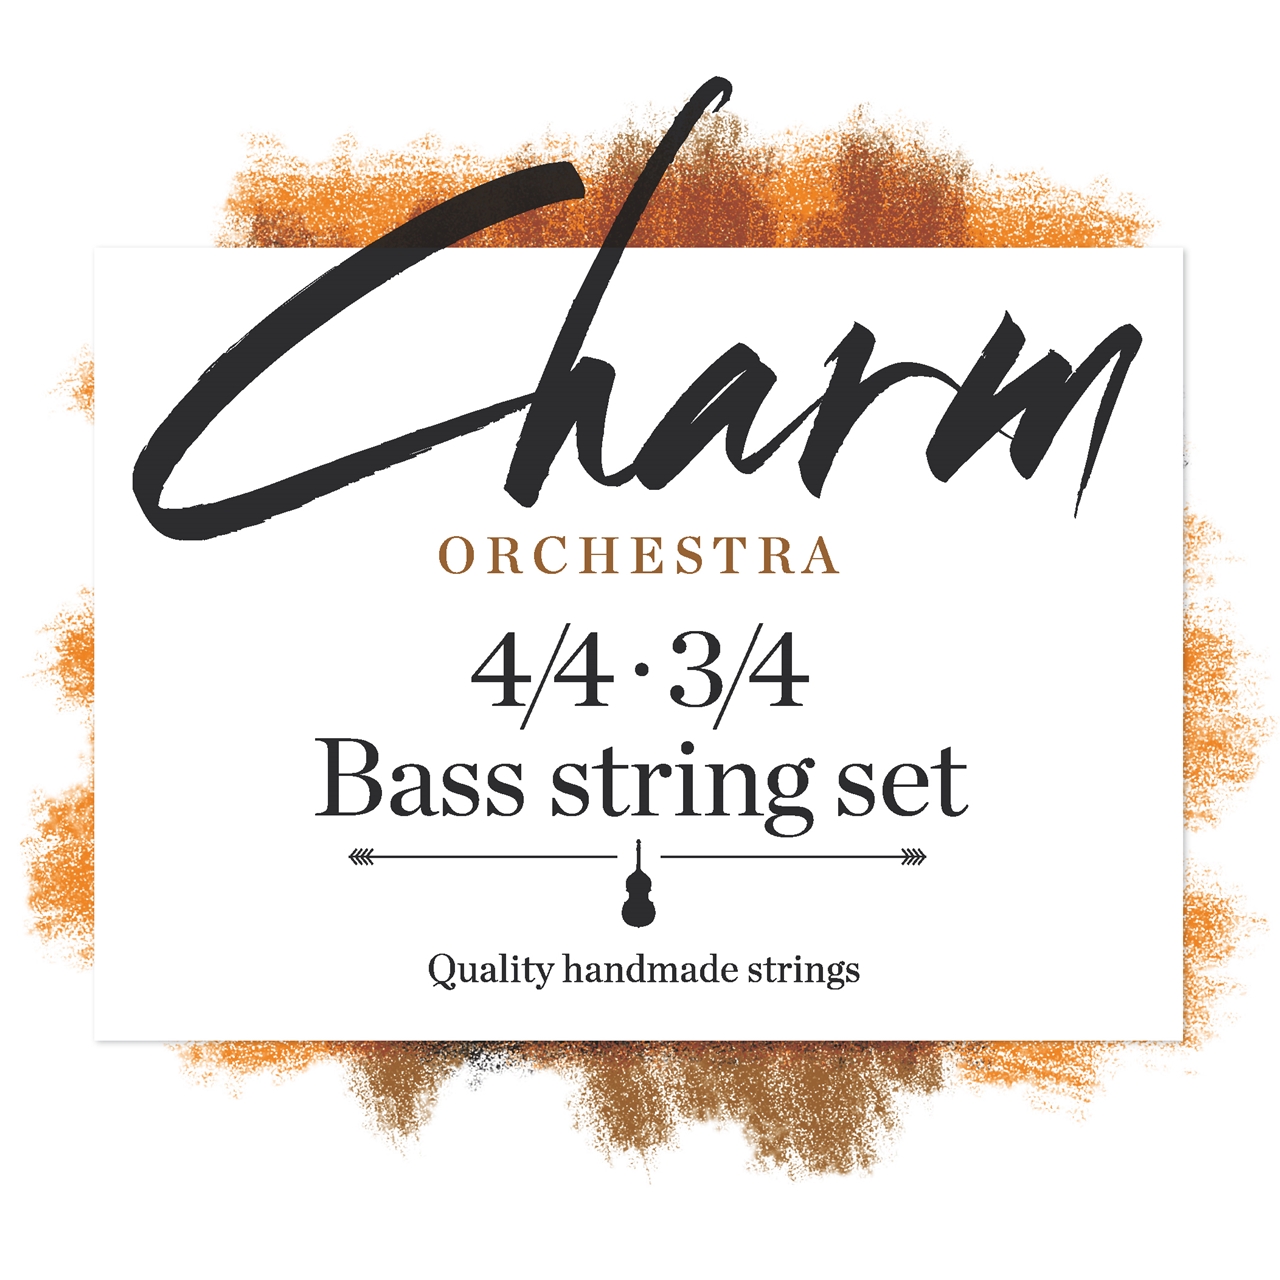 Charm Basssaitensatz Orchester 3/4 - 4/4